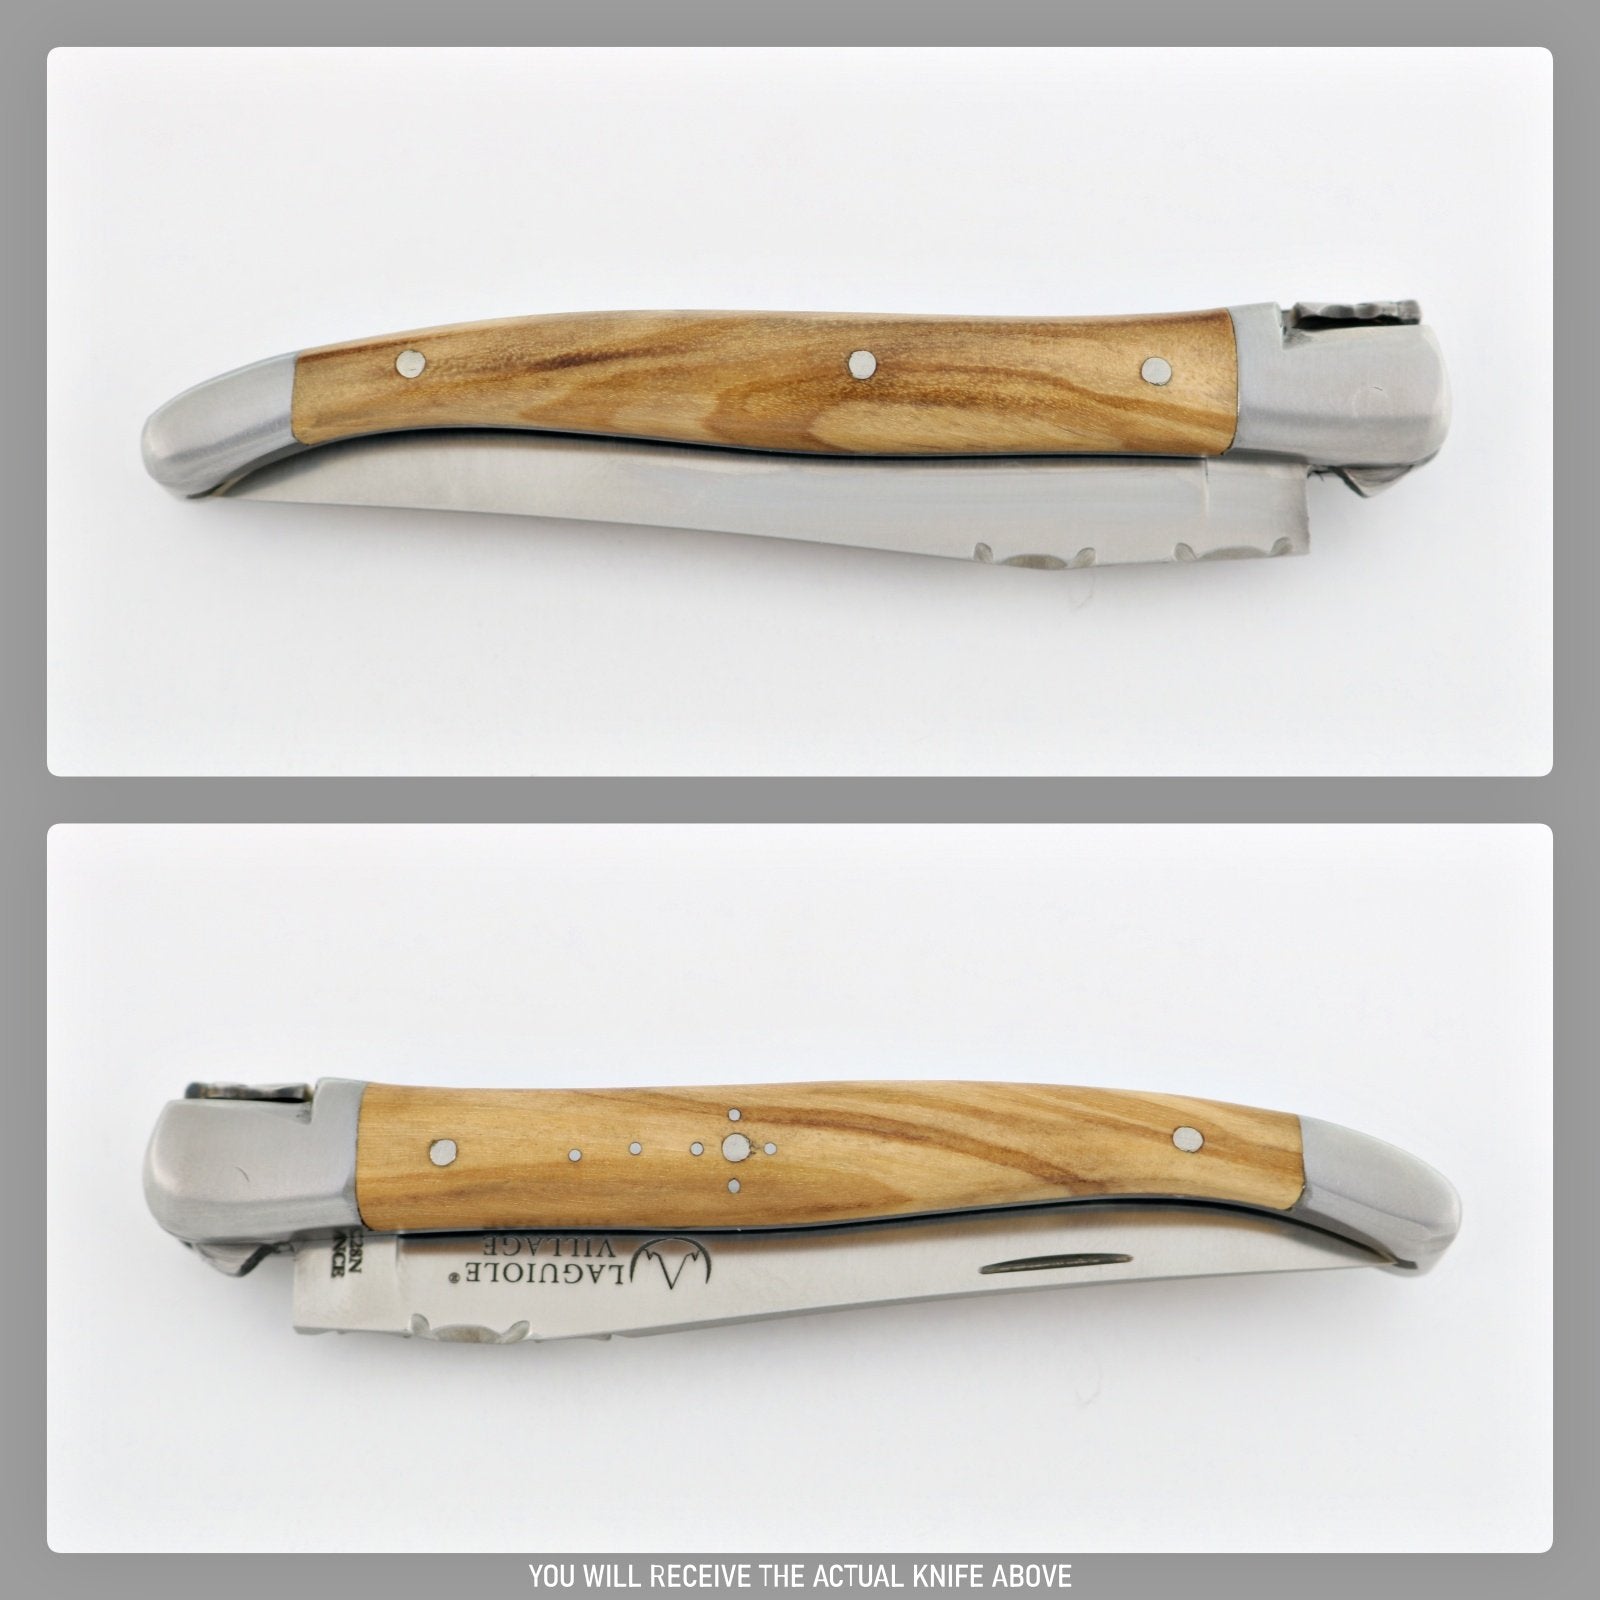 Laguiole Village 10 cm Pocket Knife Olive Wood #13-POCKET KNIFE